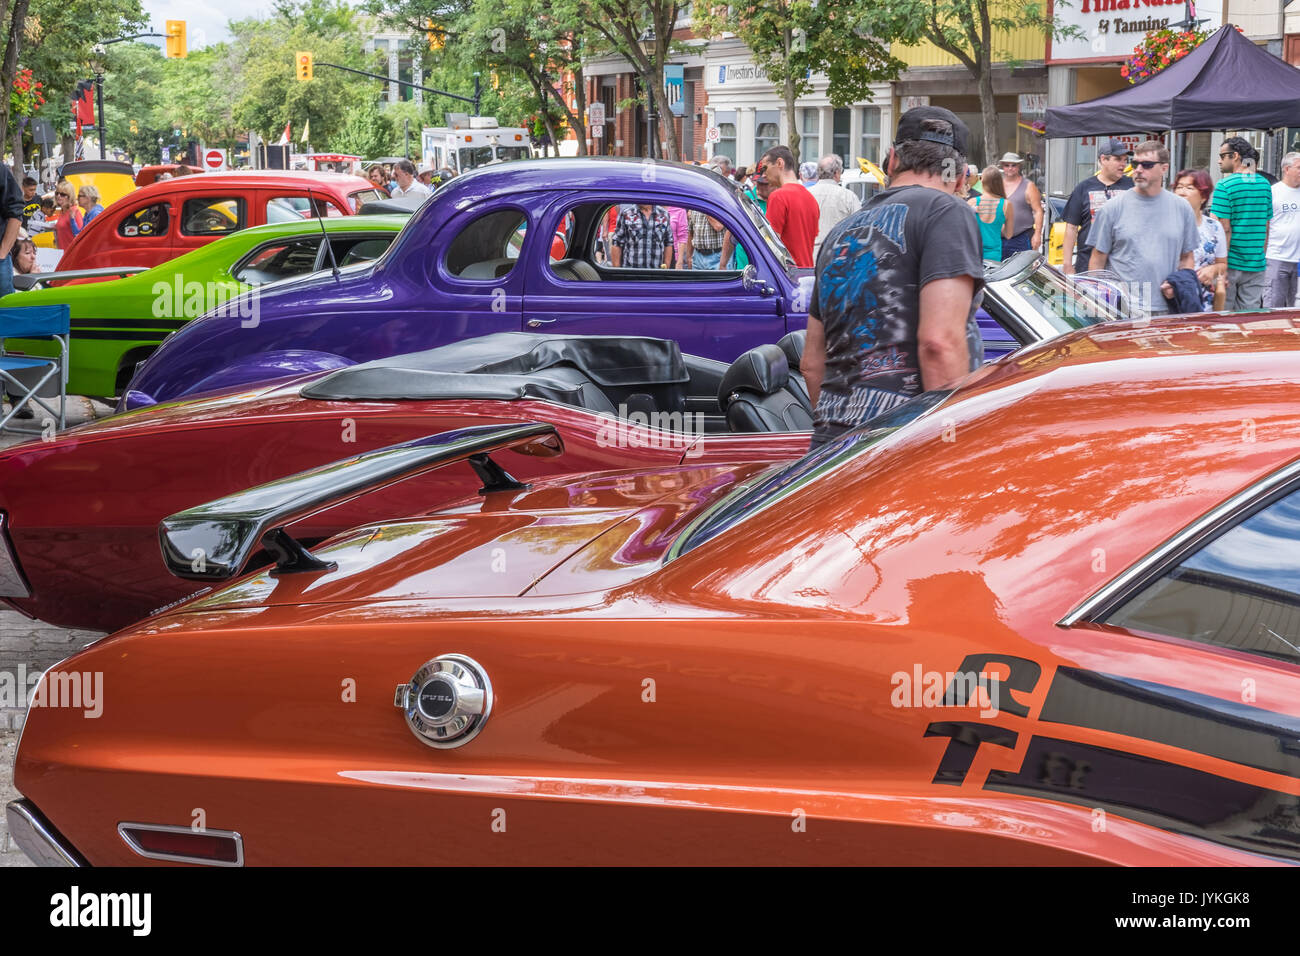 ORILLIA ONTARIO, Kanada - 19 August 2017: 19. jährlichen Downtown Orillia Classic Car Show. Eine erstaunliche Sammlung von über 400 klassische Autos. Stockfoto